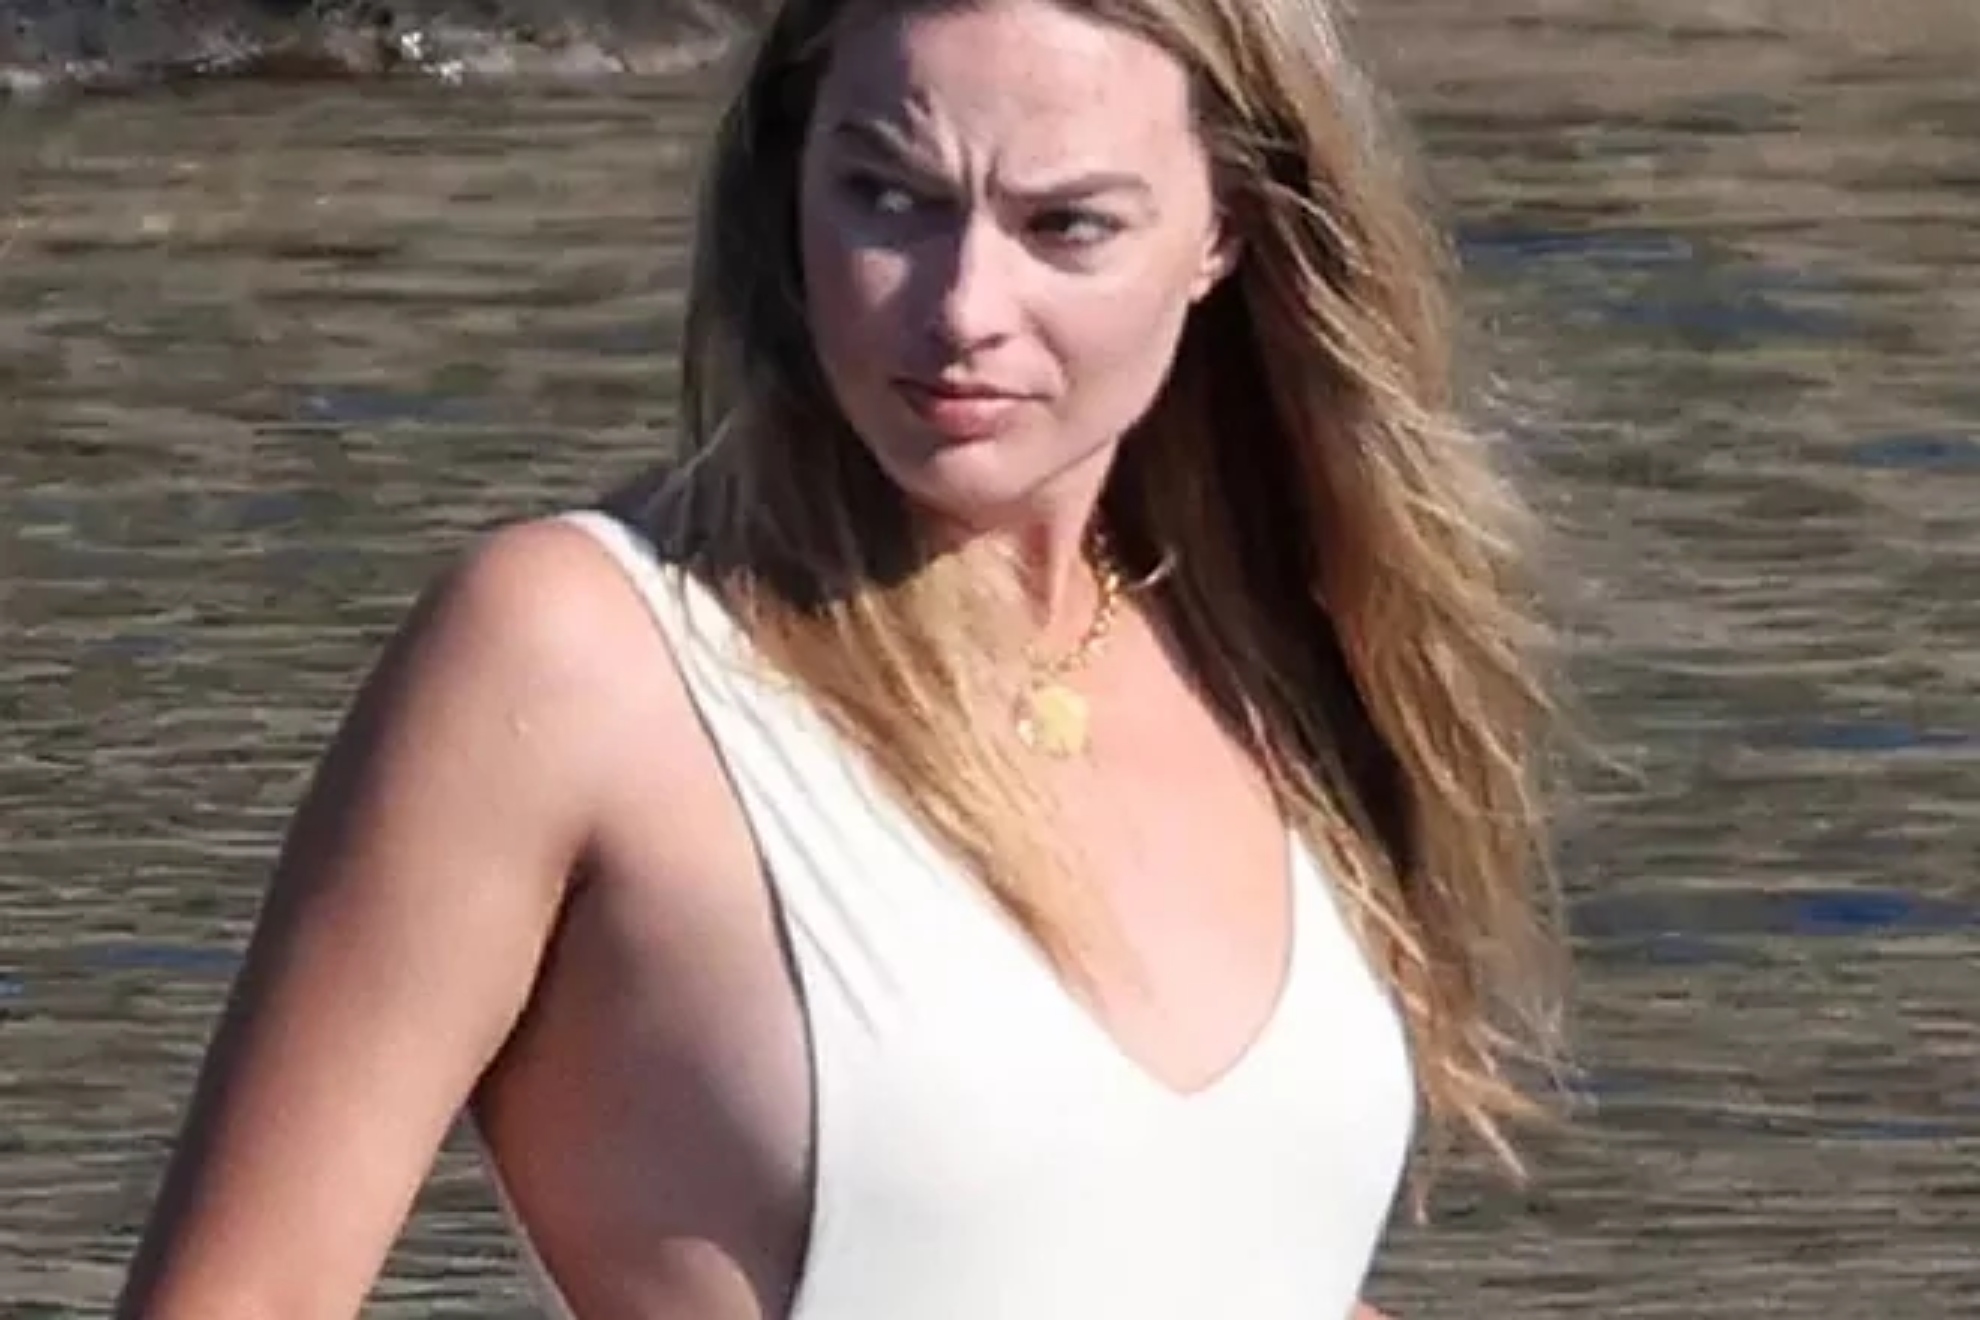 Margot Robbie looking stunning in white tankini during idyllic Greek getaway